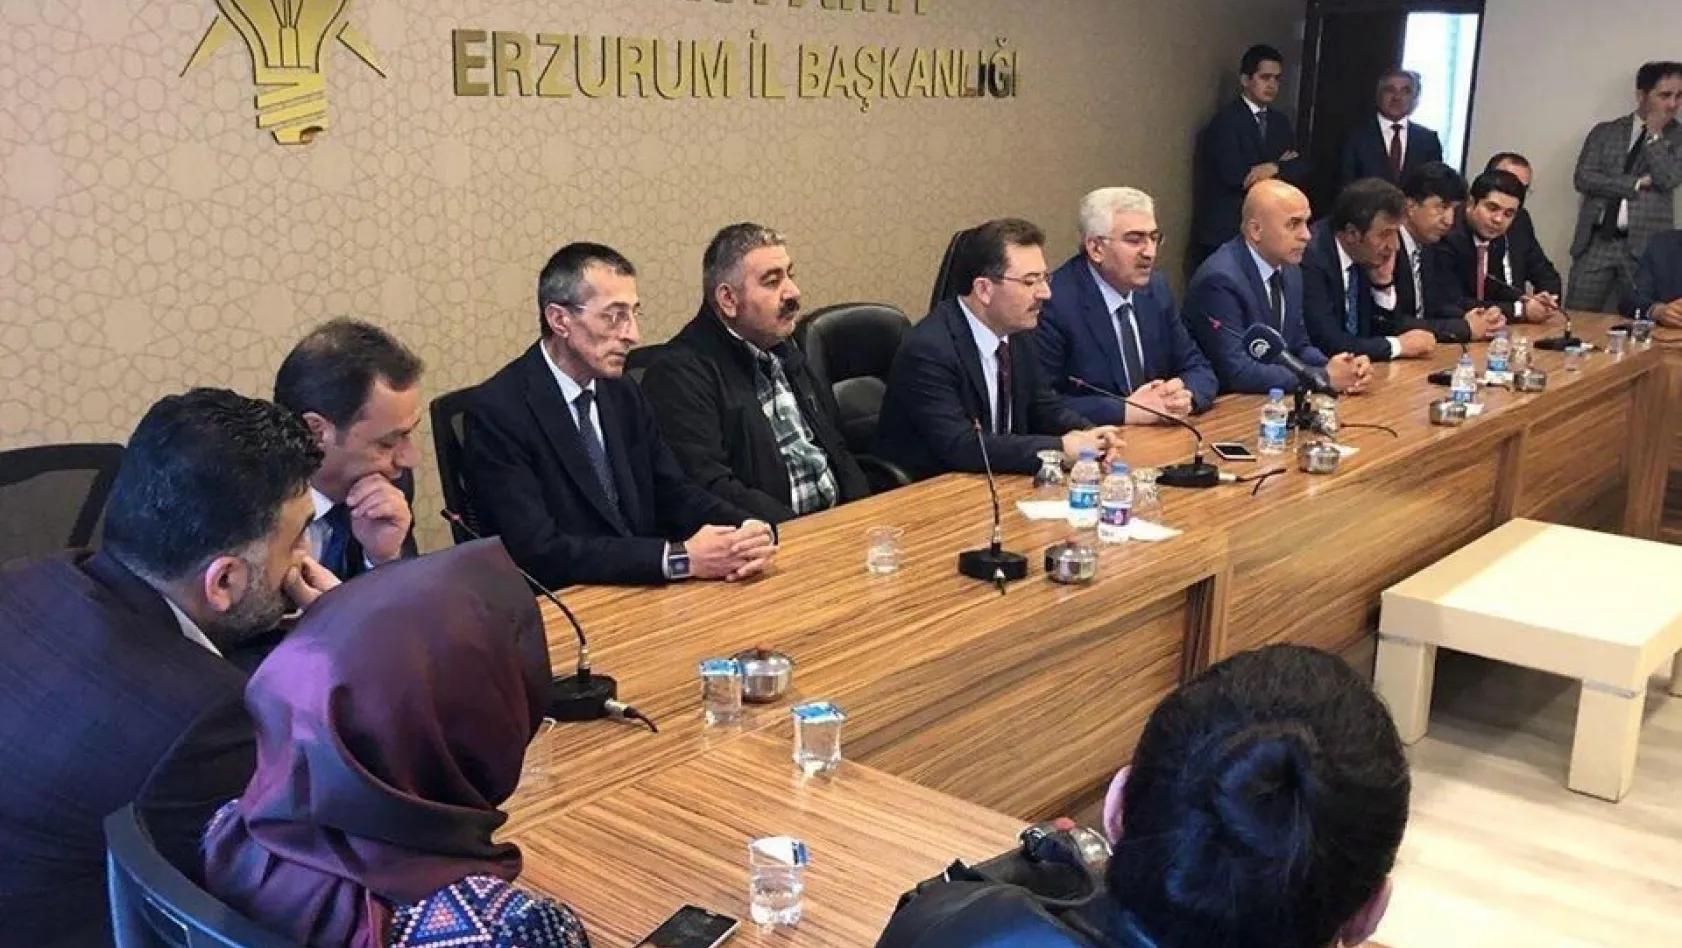 Altınok Erzurum'da, AK Parti İl başkanlığını ziyaret etti
